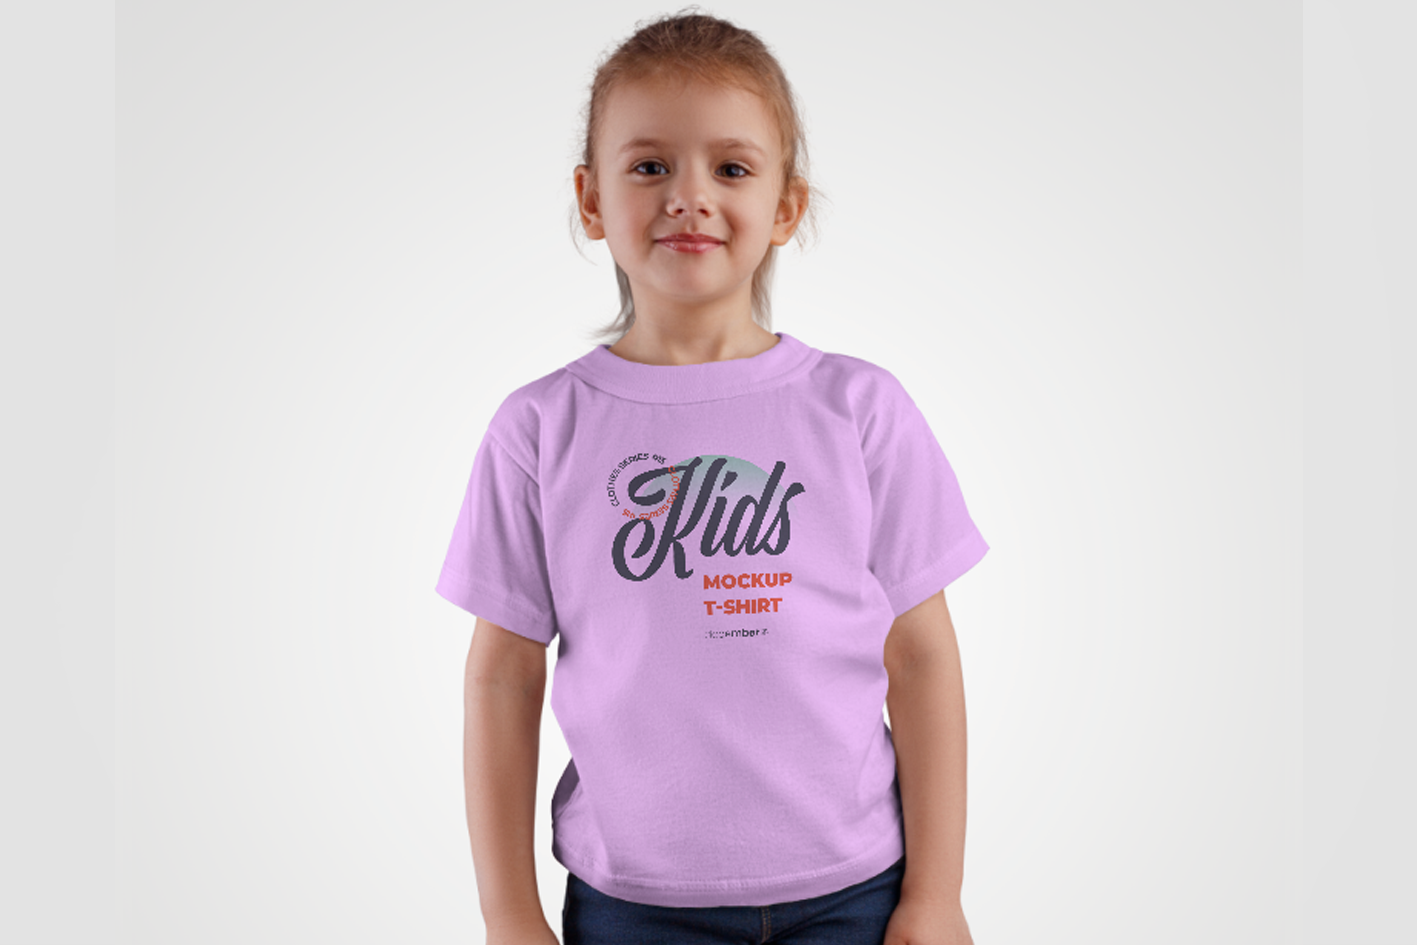 T-shirt rose baguette magique pour fille